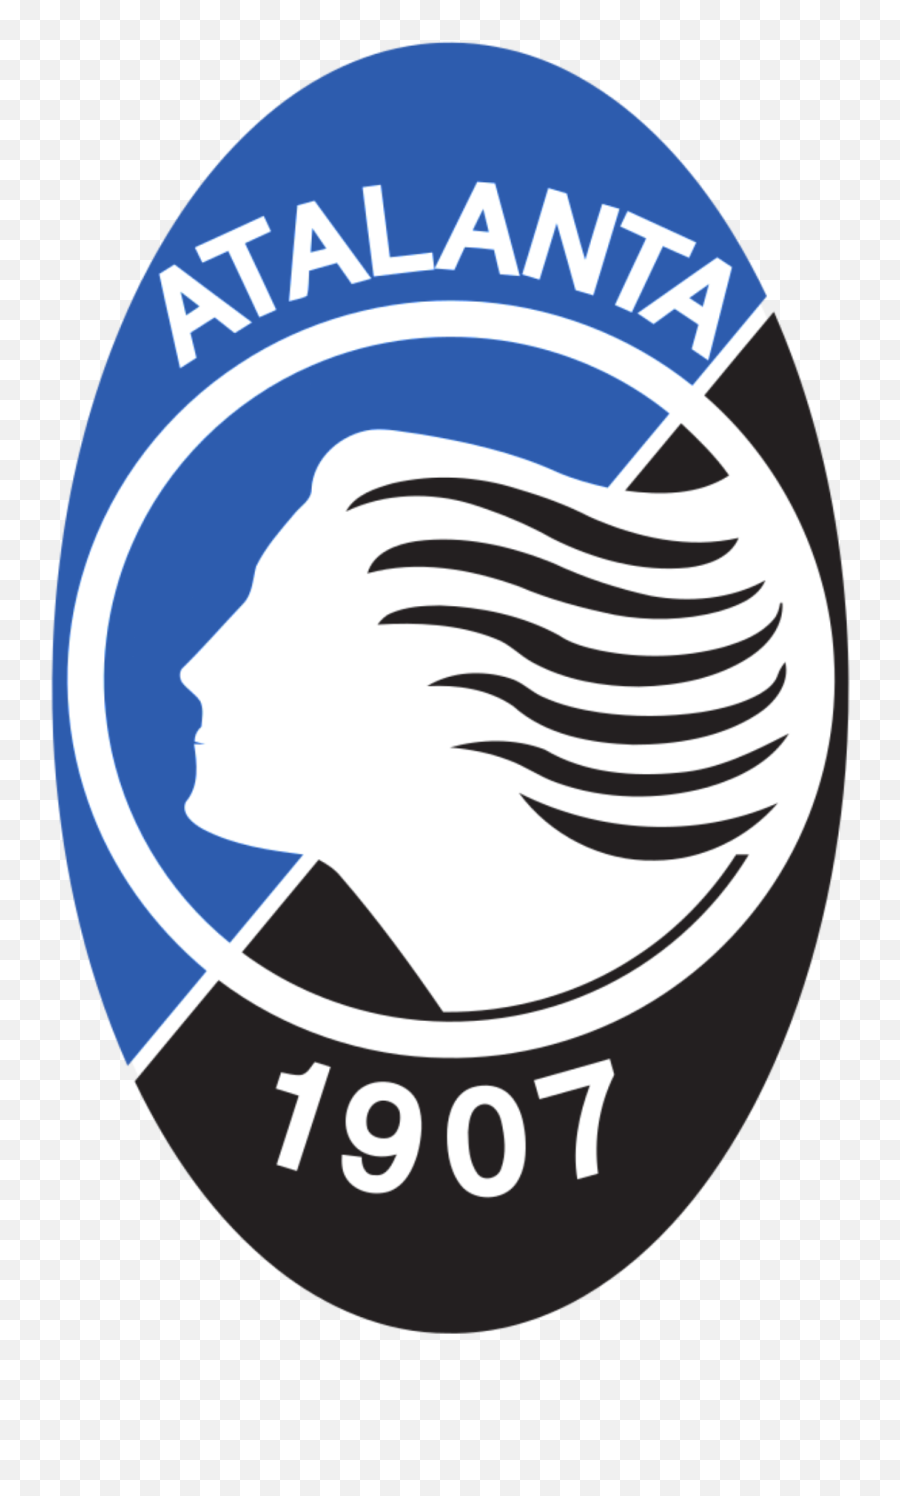 Atalanta Bc - Wikipedia Atalanta Fc Emoji,Psg Logo